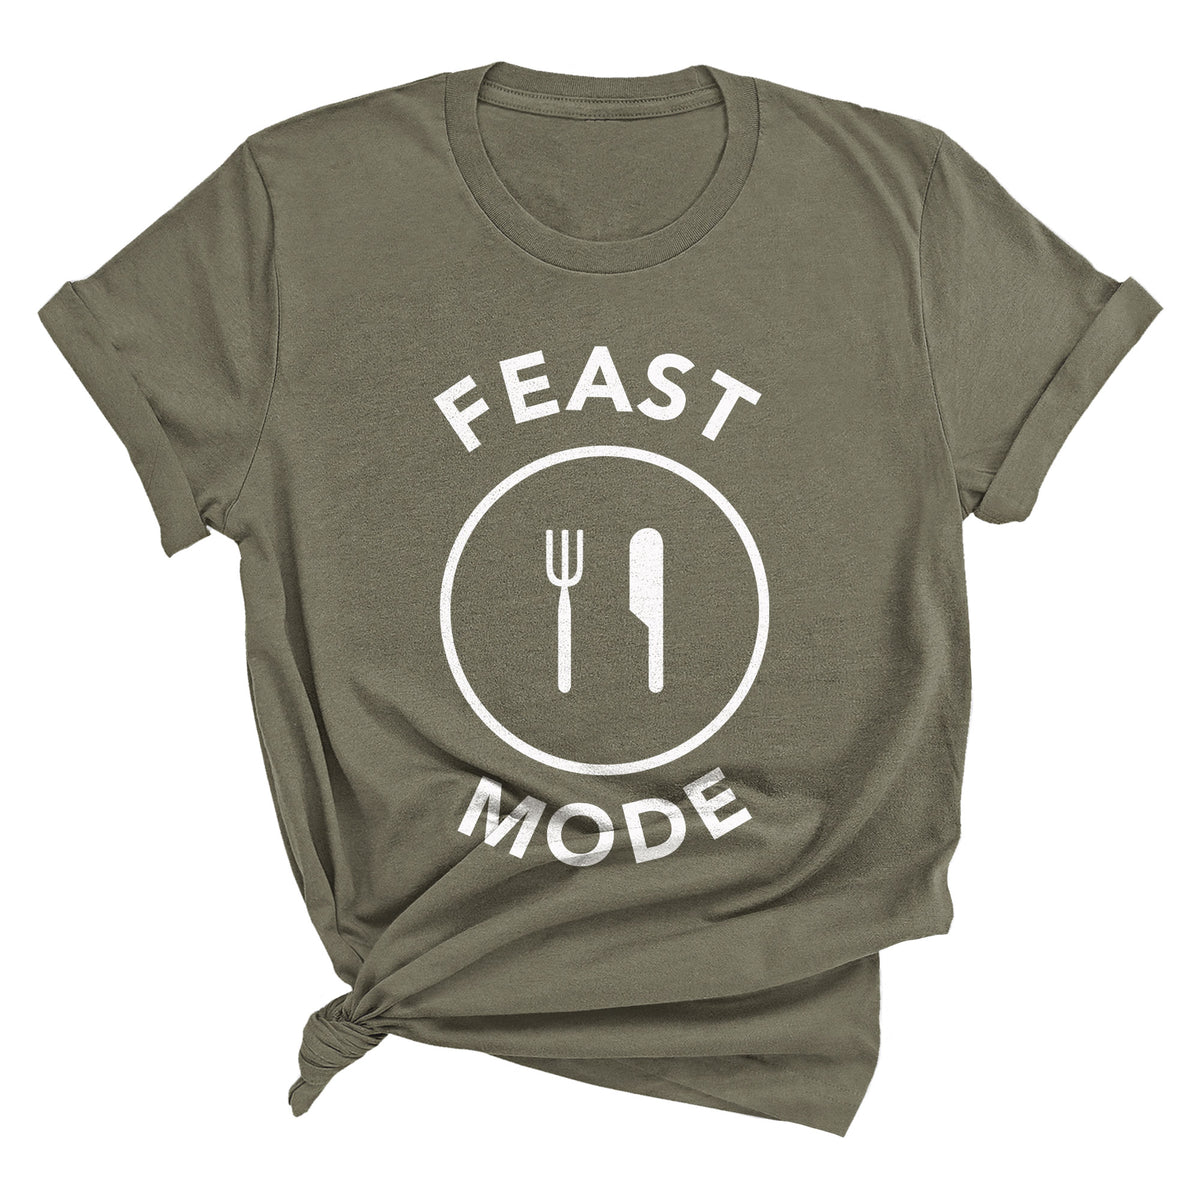 Feast Mode Unisex T-Shirt